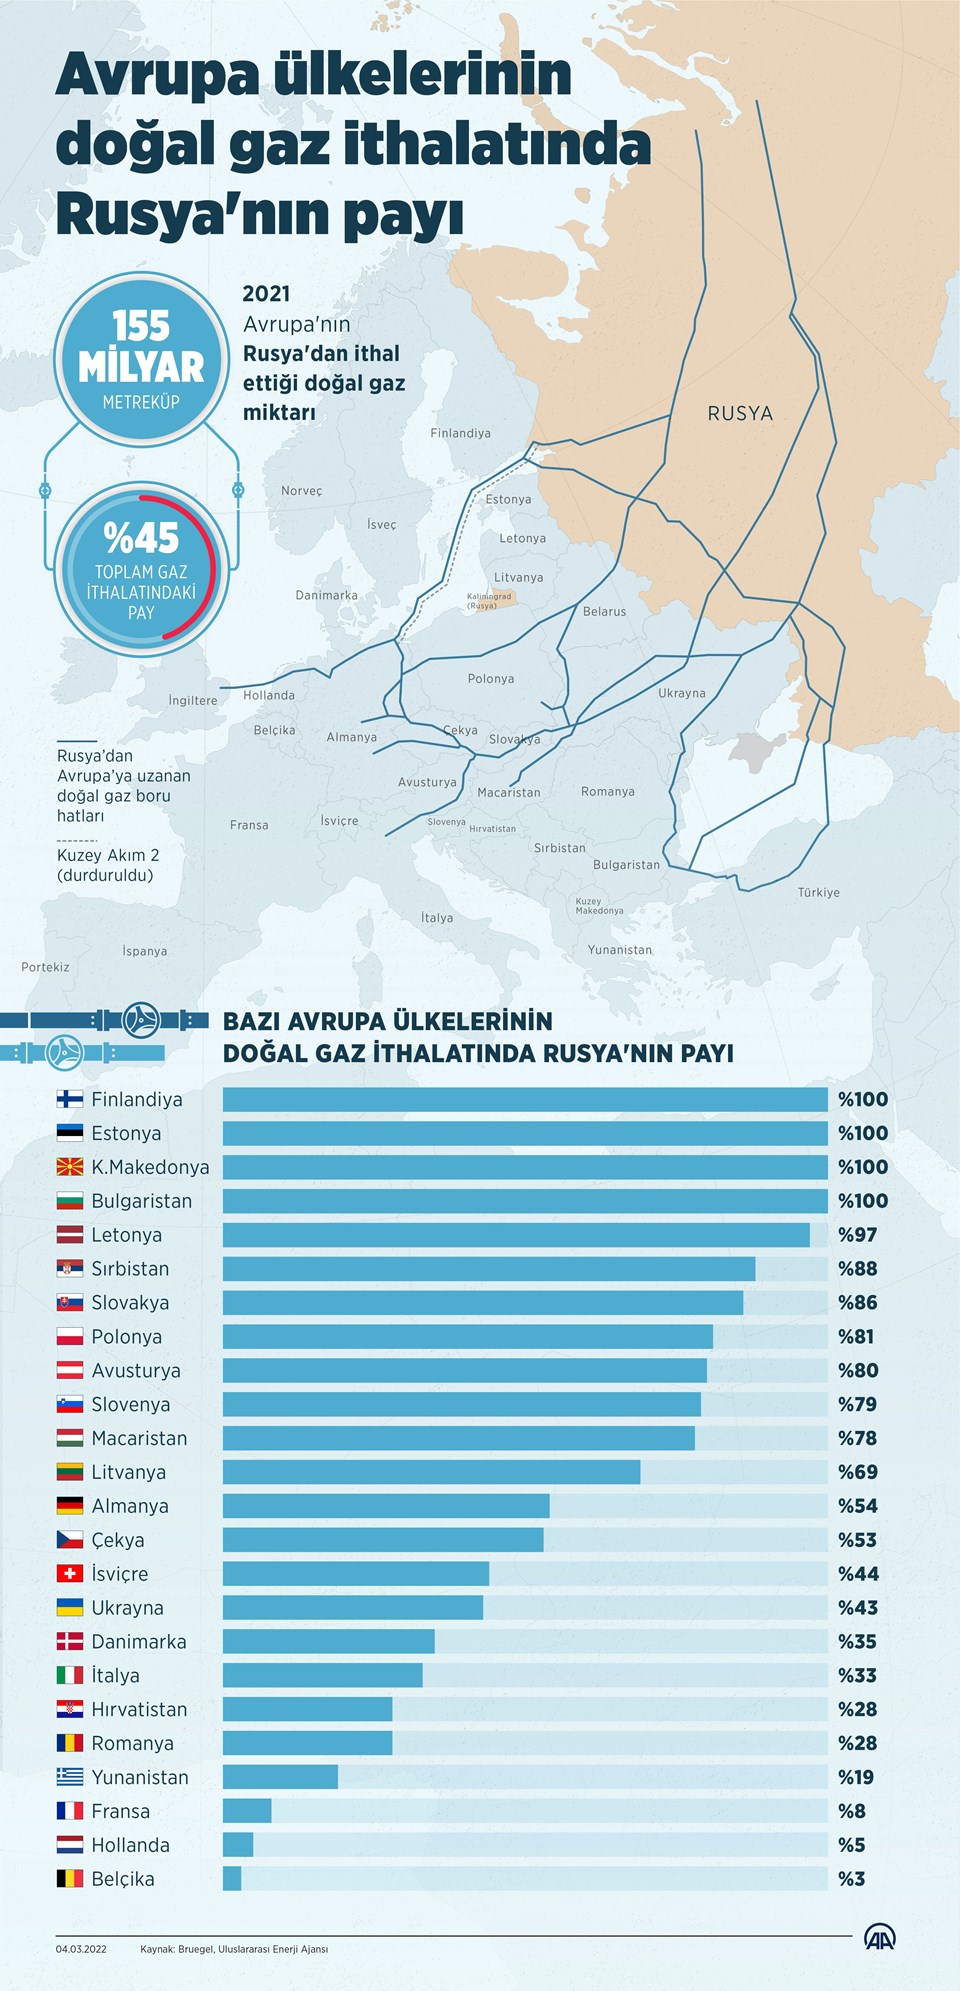 Avrupa'nın kullandığı doğalgazda Rusya'nın payı ne kadar? - 2